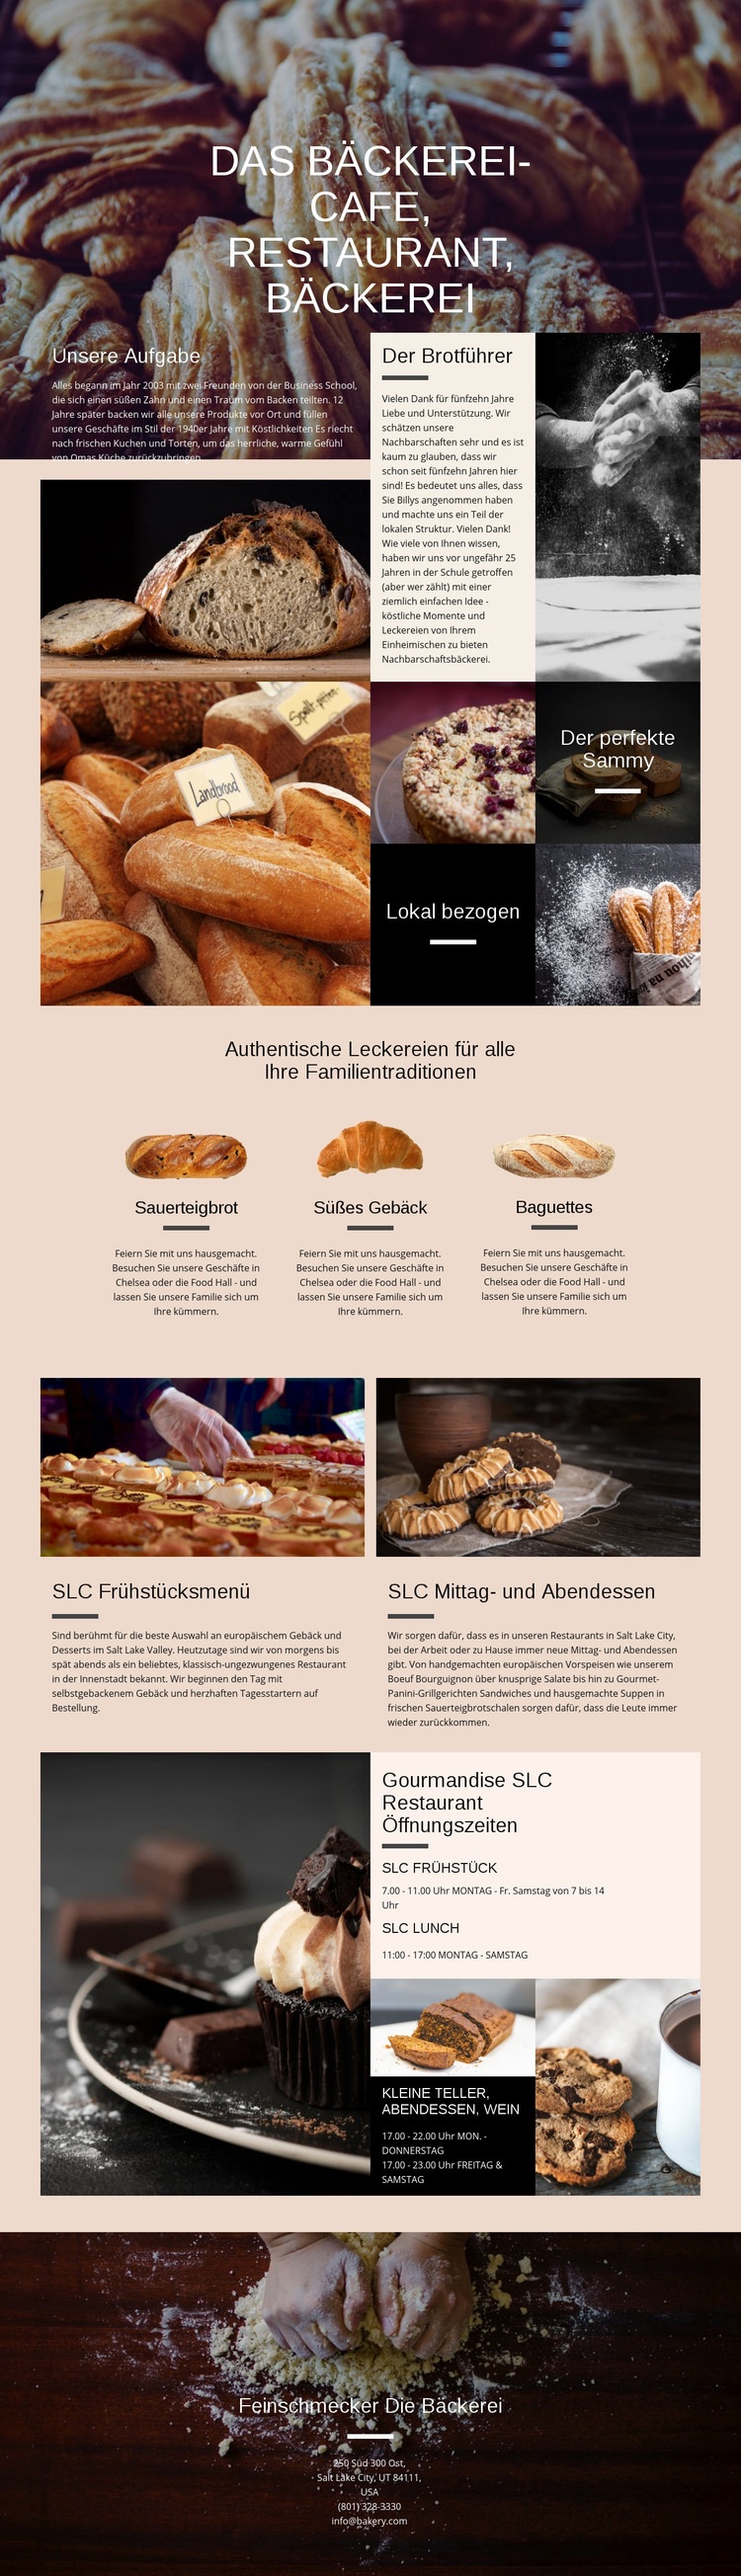 Die Bäckerei Website-Modell